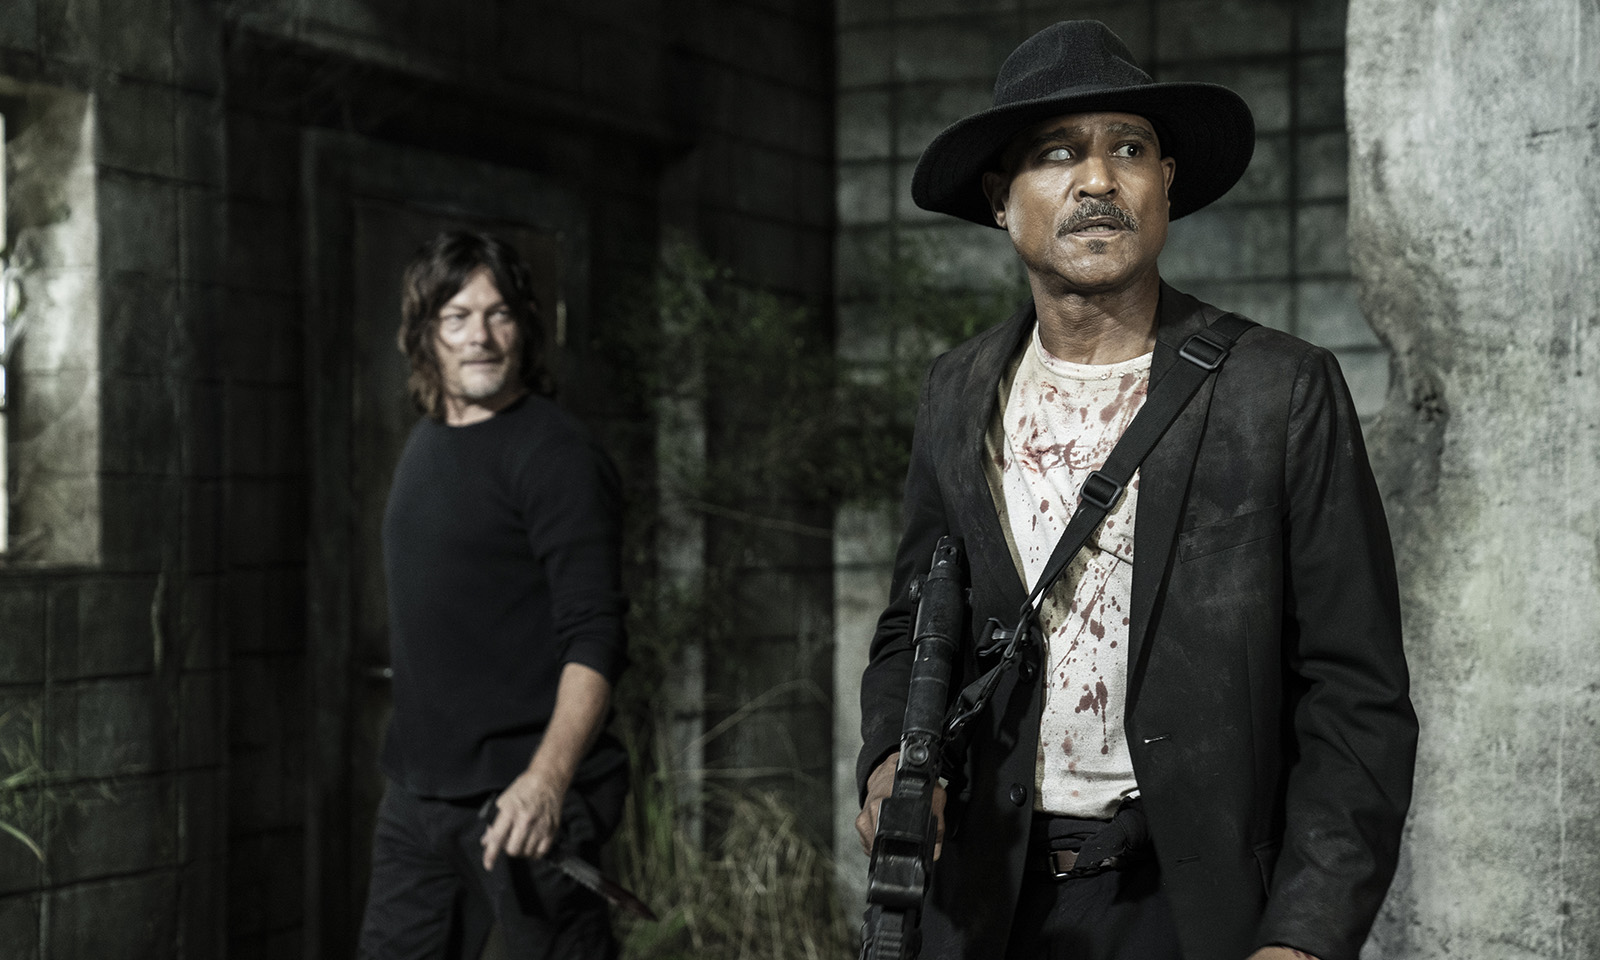 Gabriel e Daryl olhando para algo em cena do episódio 17 da 11ª temporada de The Walking Dead.